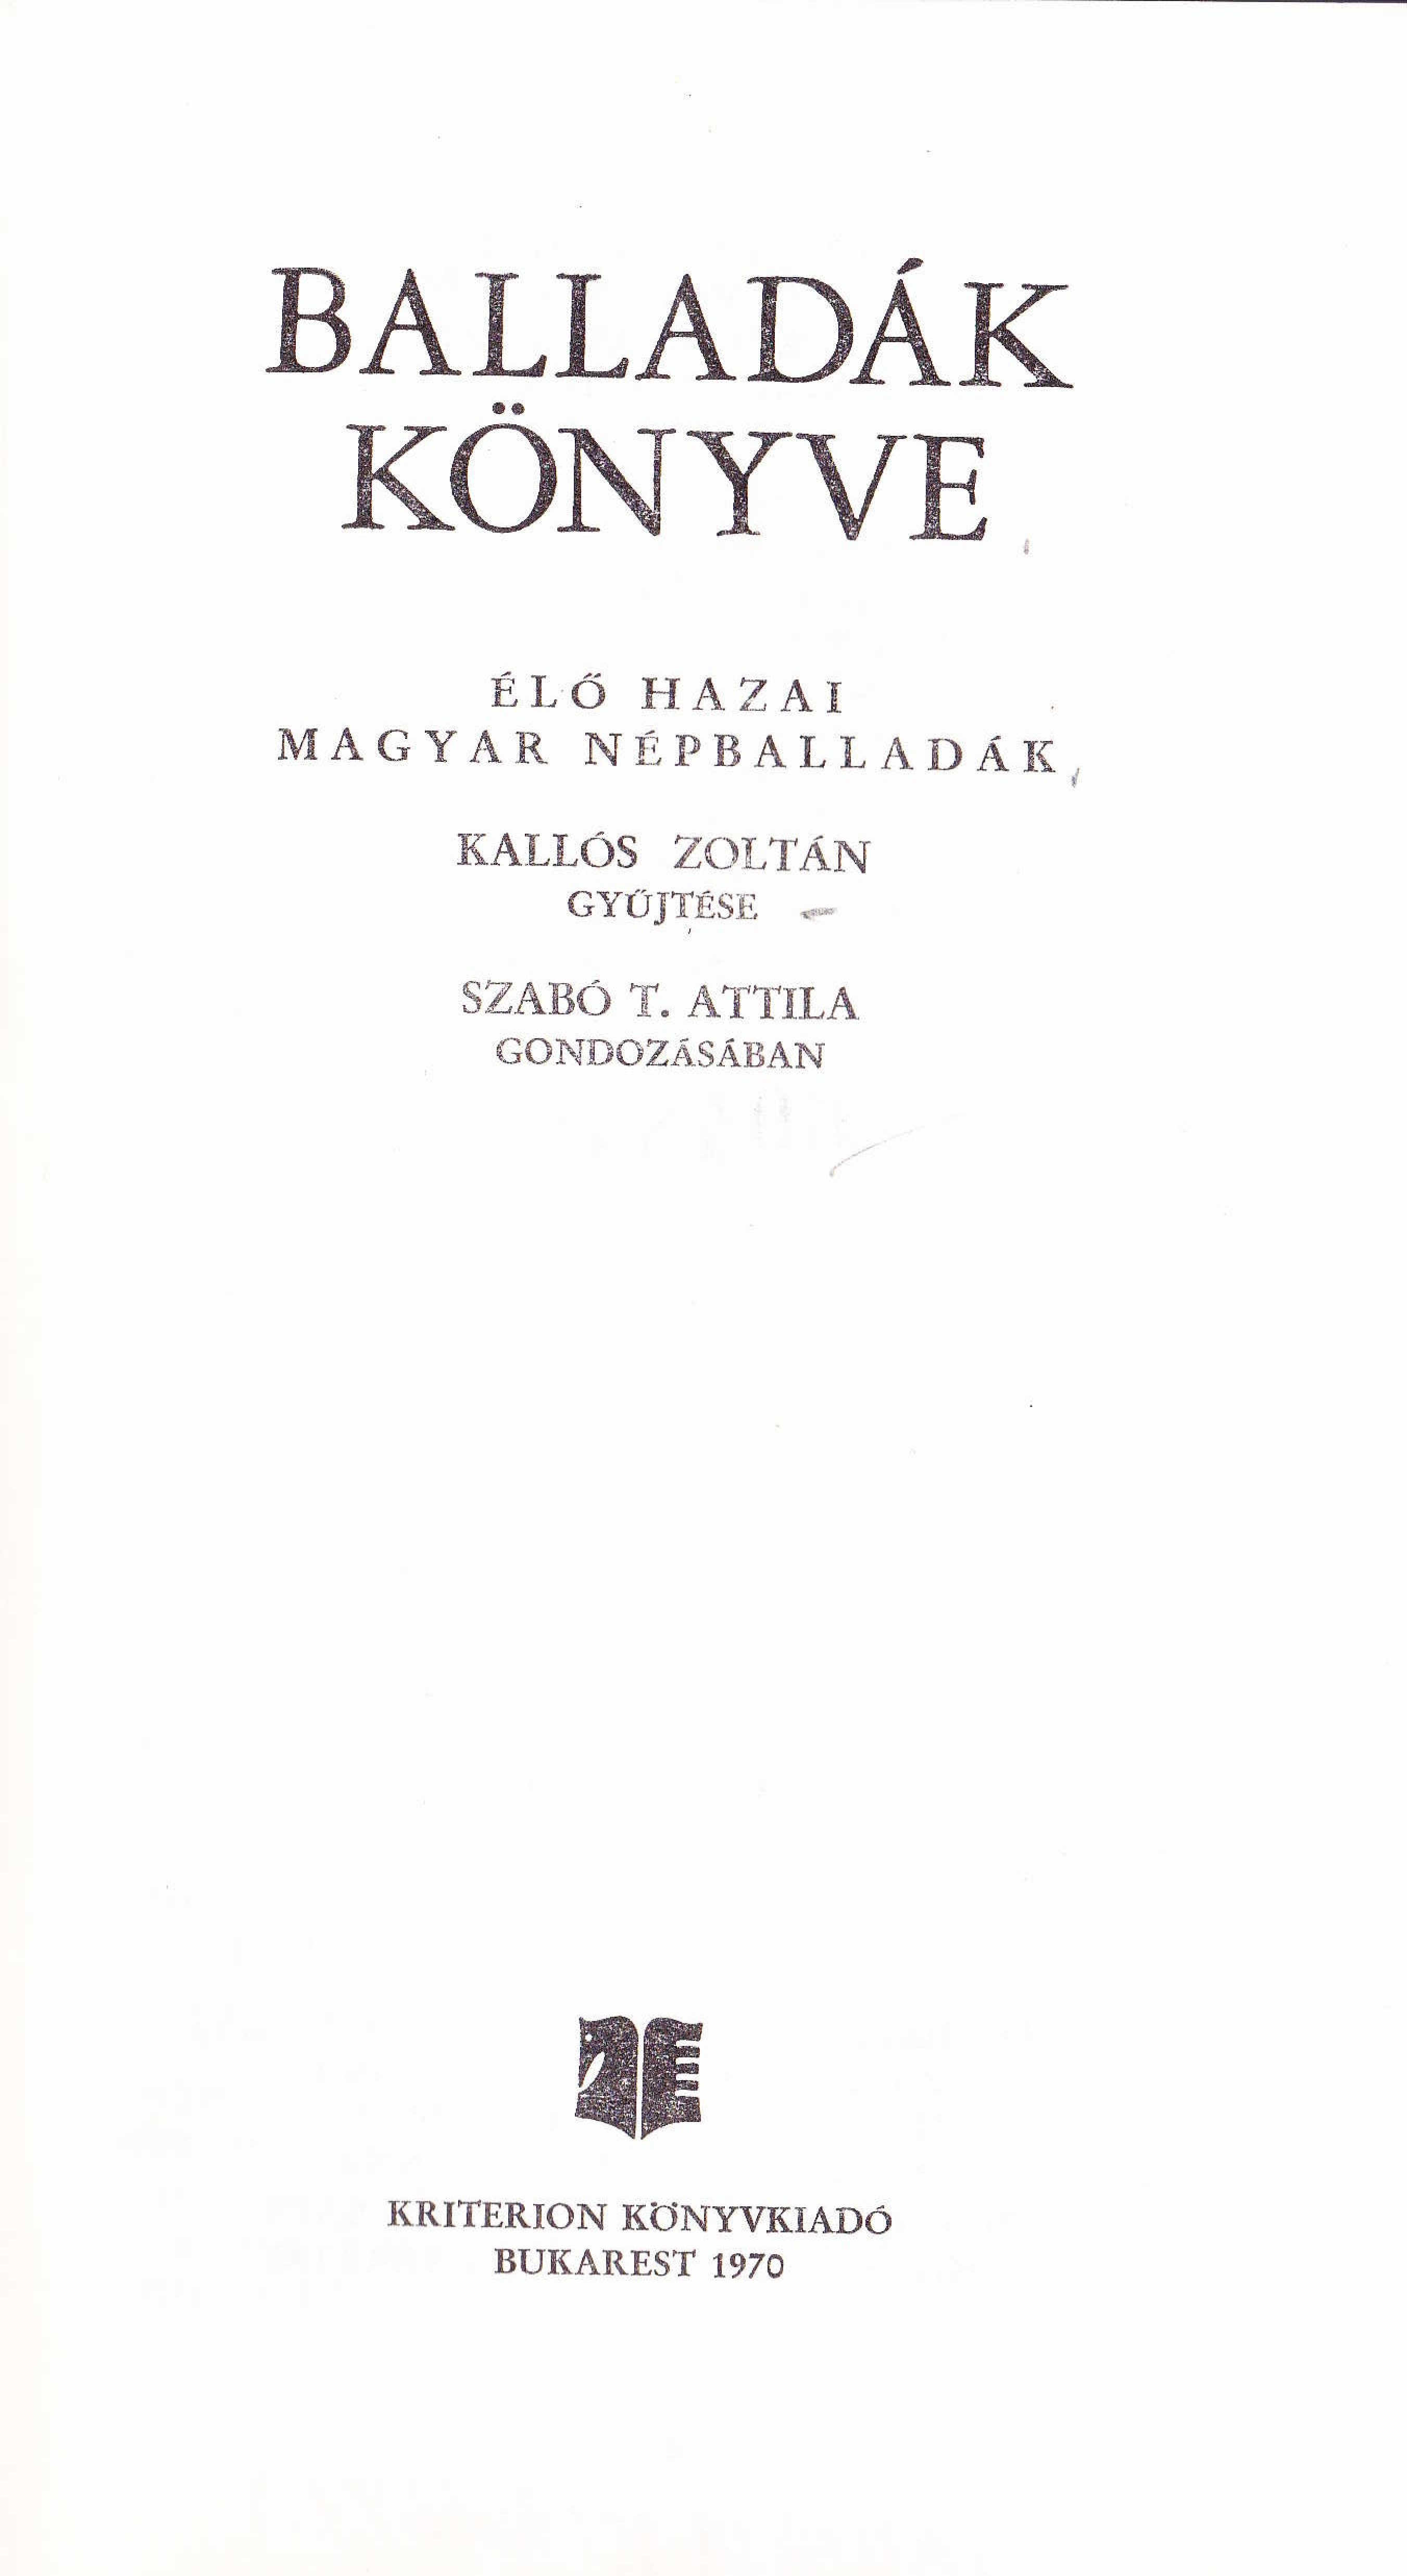 A Kallós Zoltán és Szabó T. Attila Balladák könyve: Élő hazai magyar népballadák című kötet címoldala